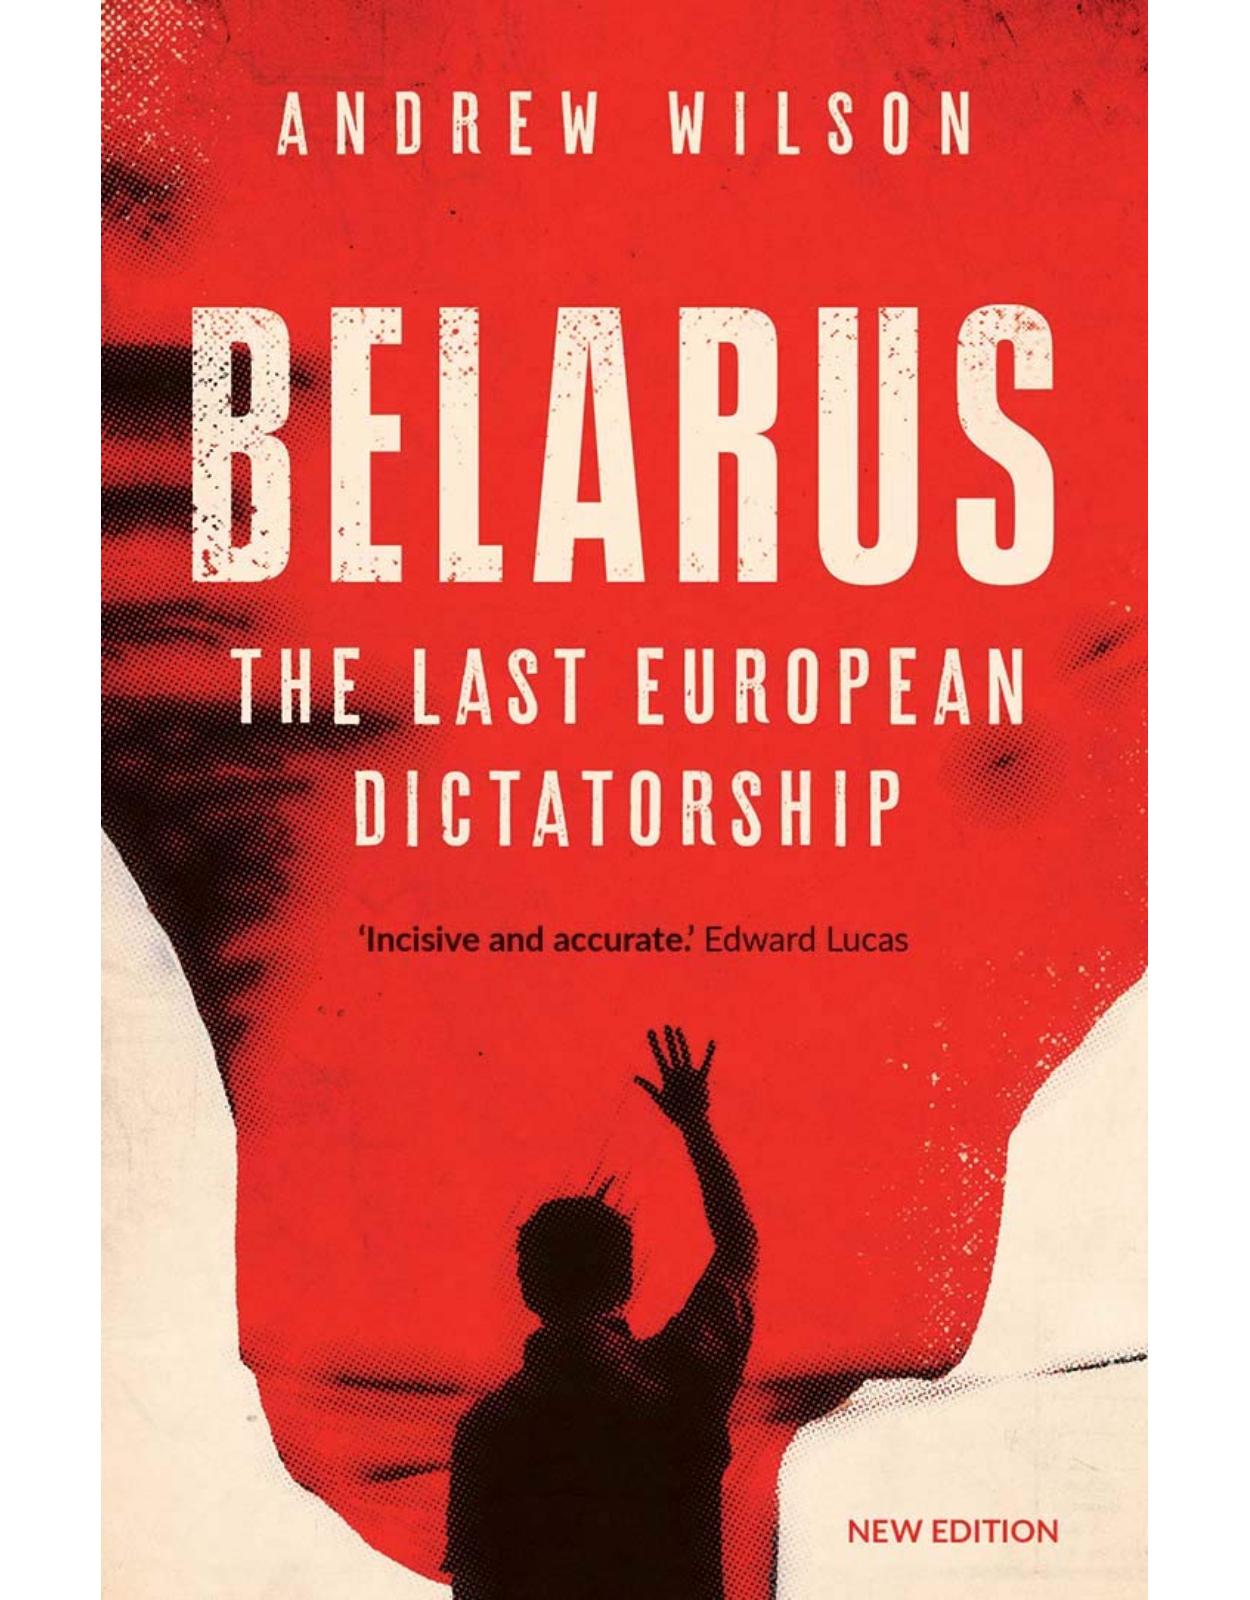 Belarus: The Last European Dictatorship